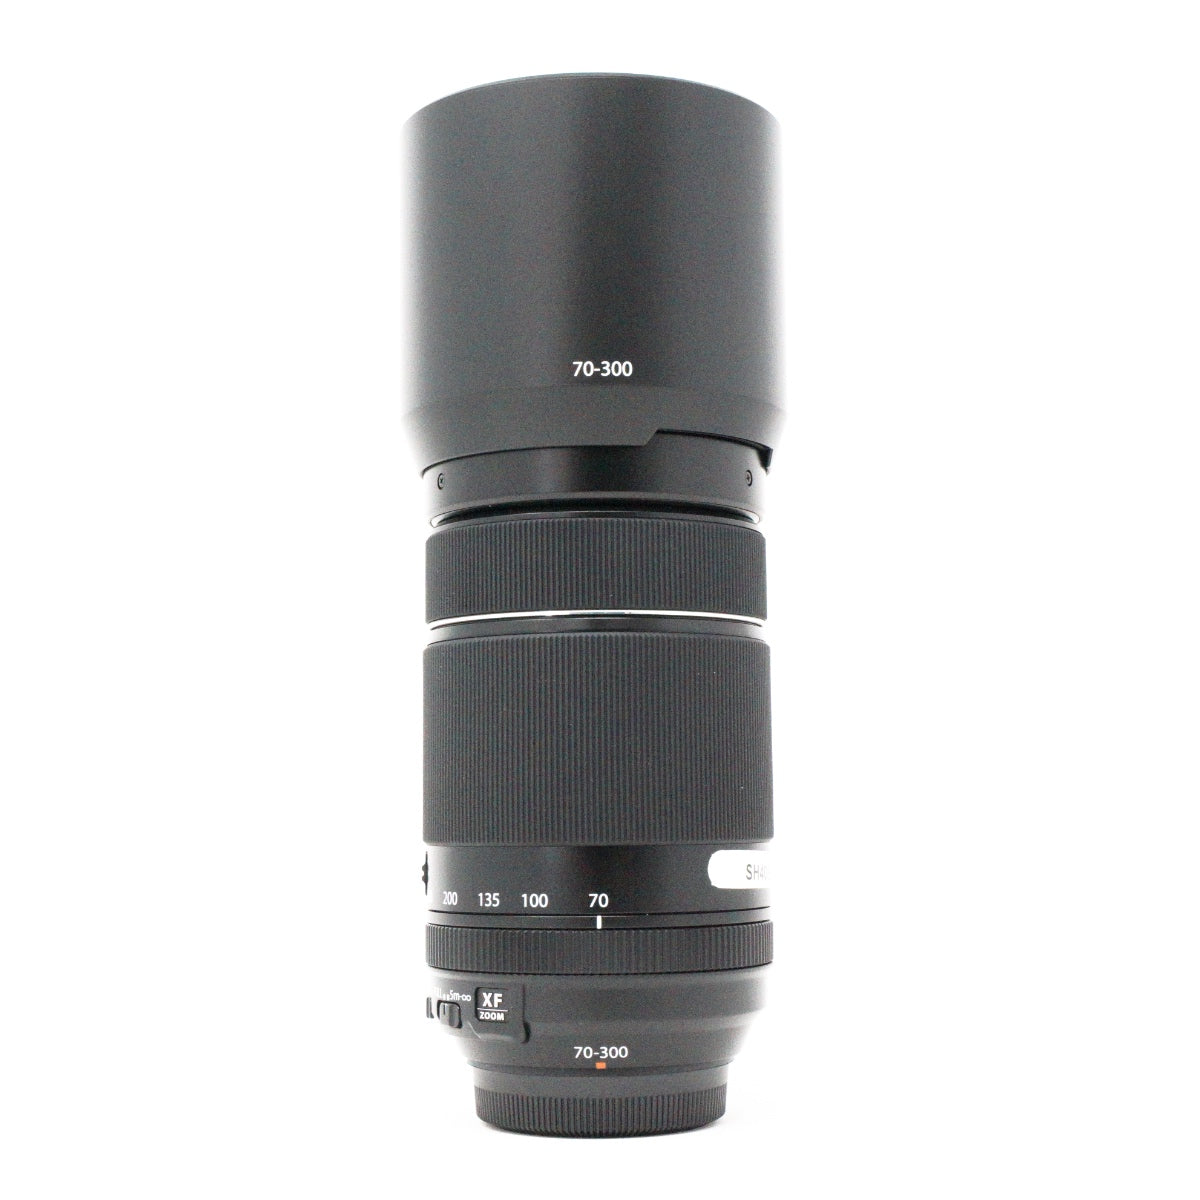 Used Fujifilm XF 70-300mm F4-5.6 R LM OIS WR lens